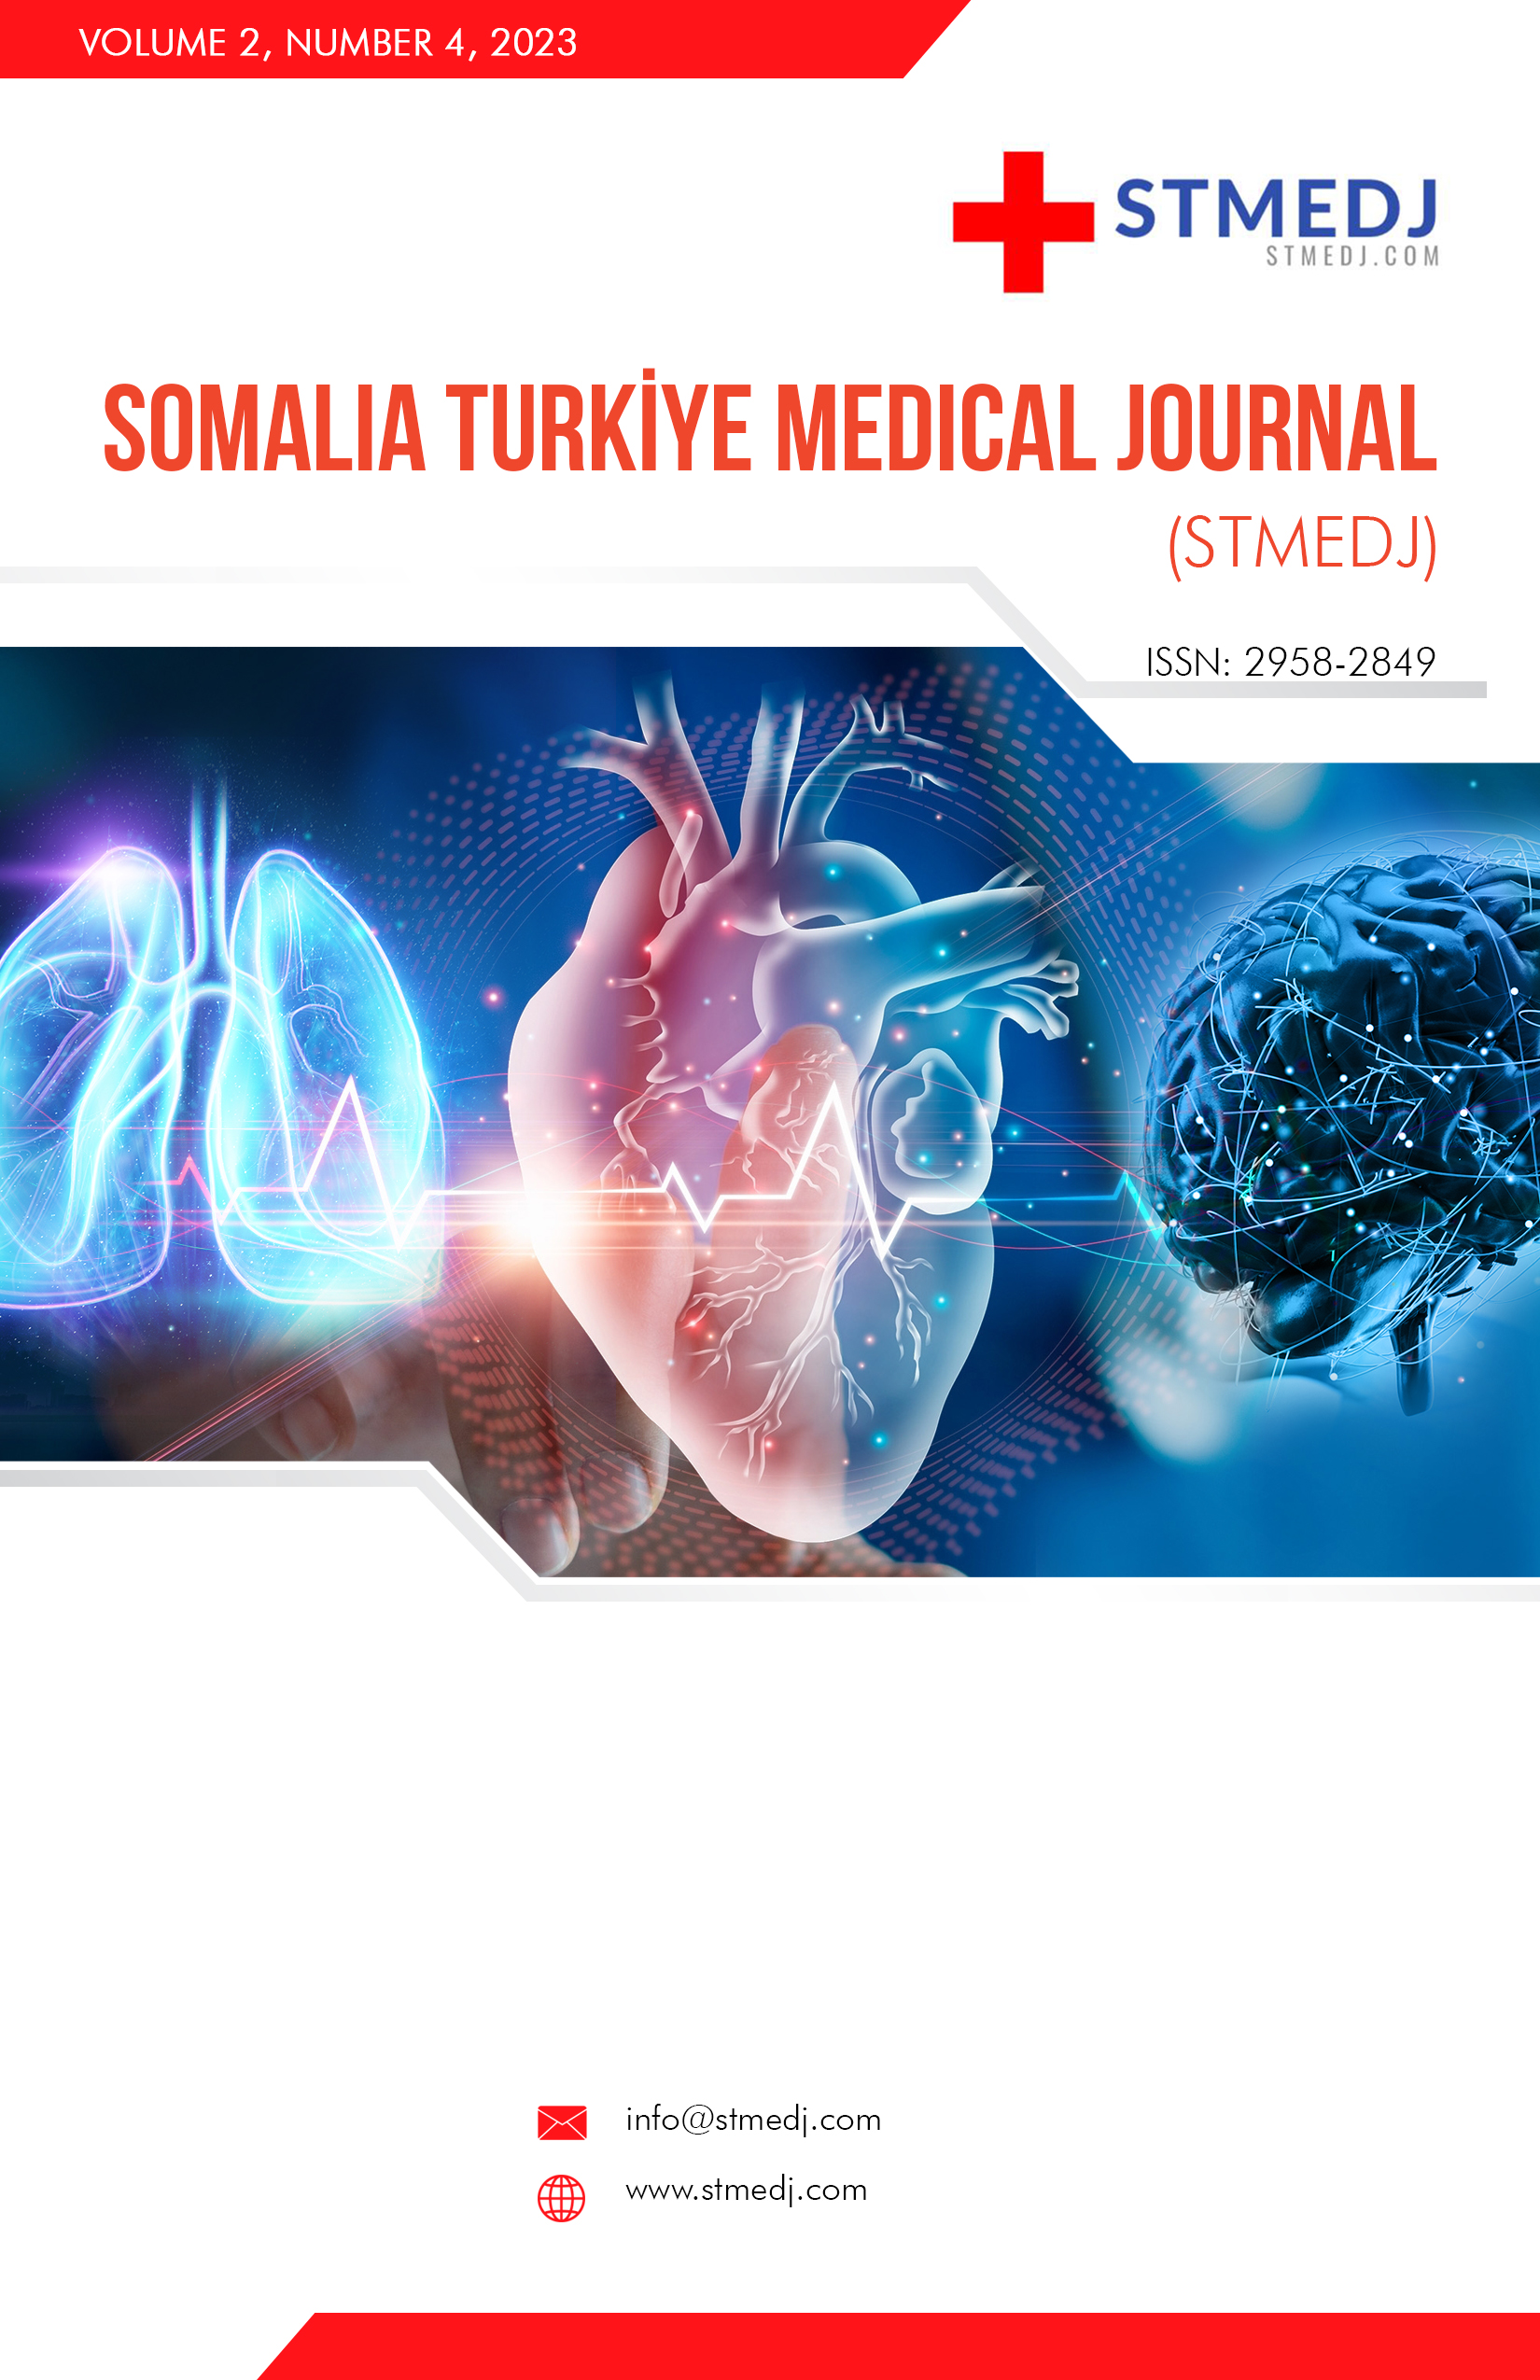 					View Vol. 2 No. 4 (2023): Somalia Turkiye Medical Journal (STMJ)
				